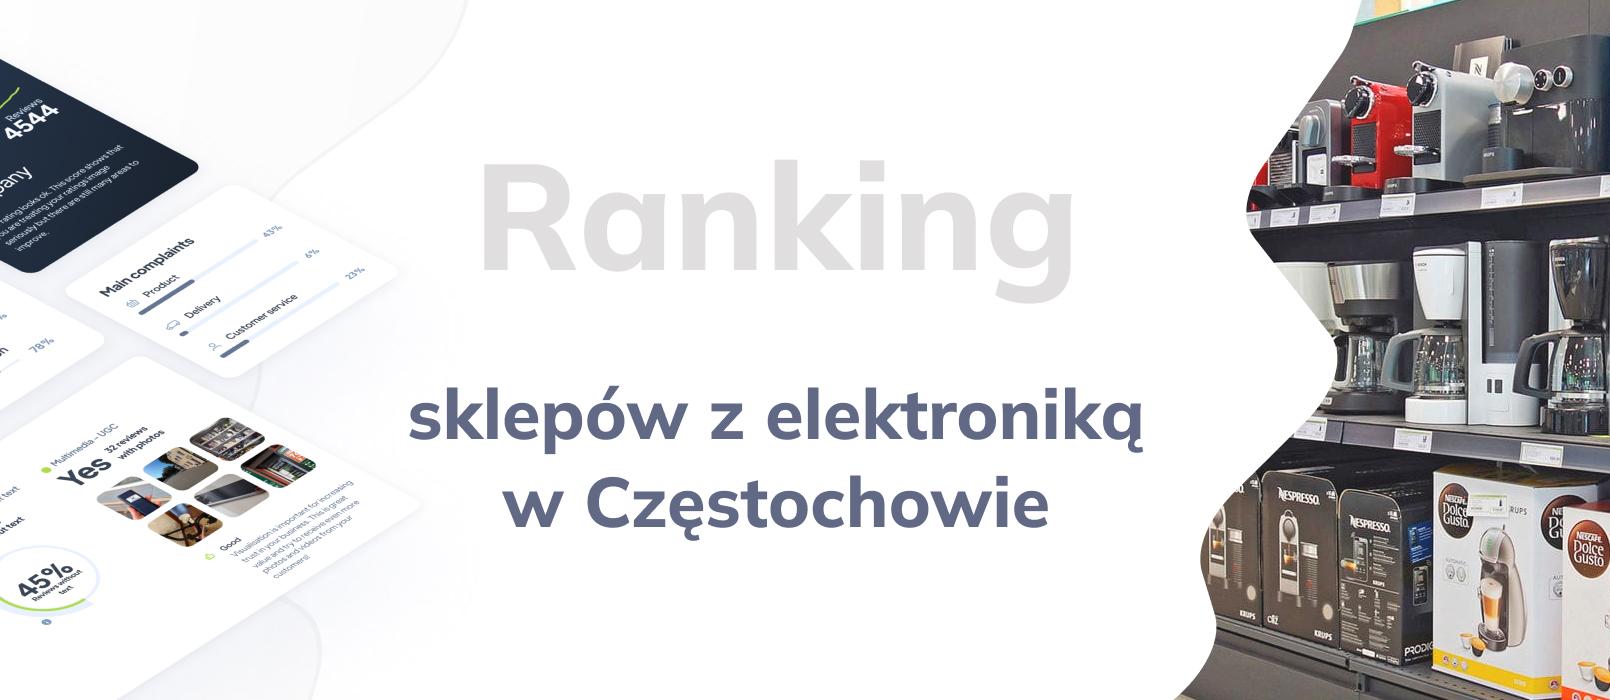 Sklepy z elektroniką w Częstochowie - ranking TOP 10